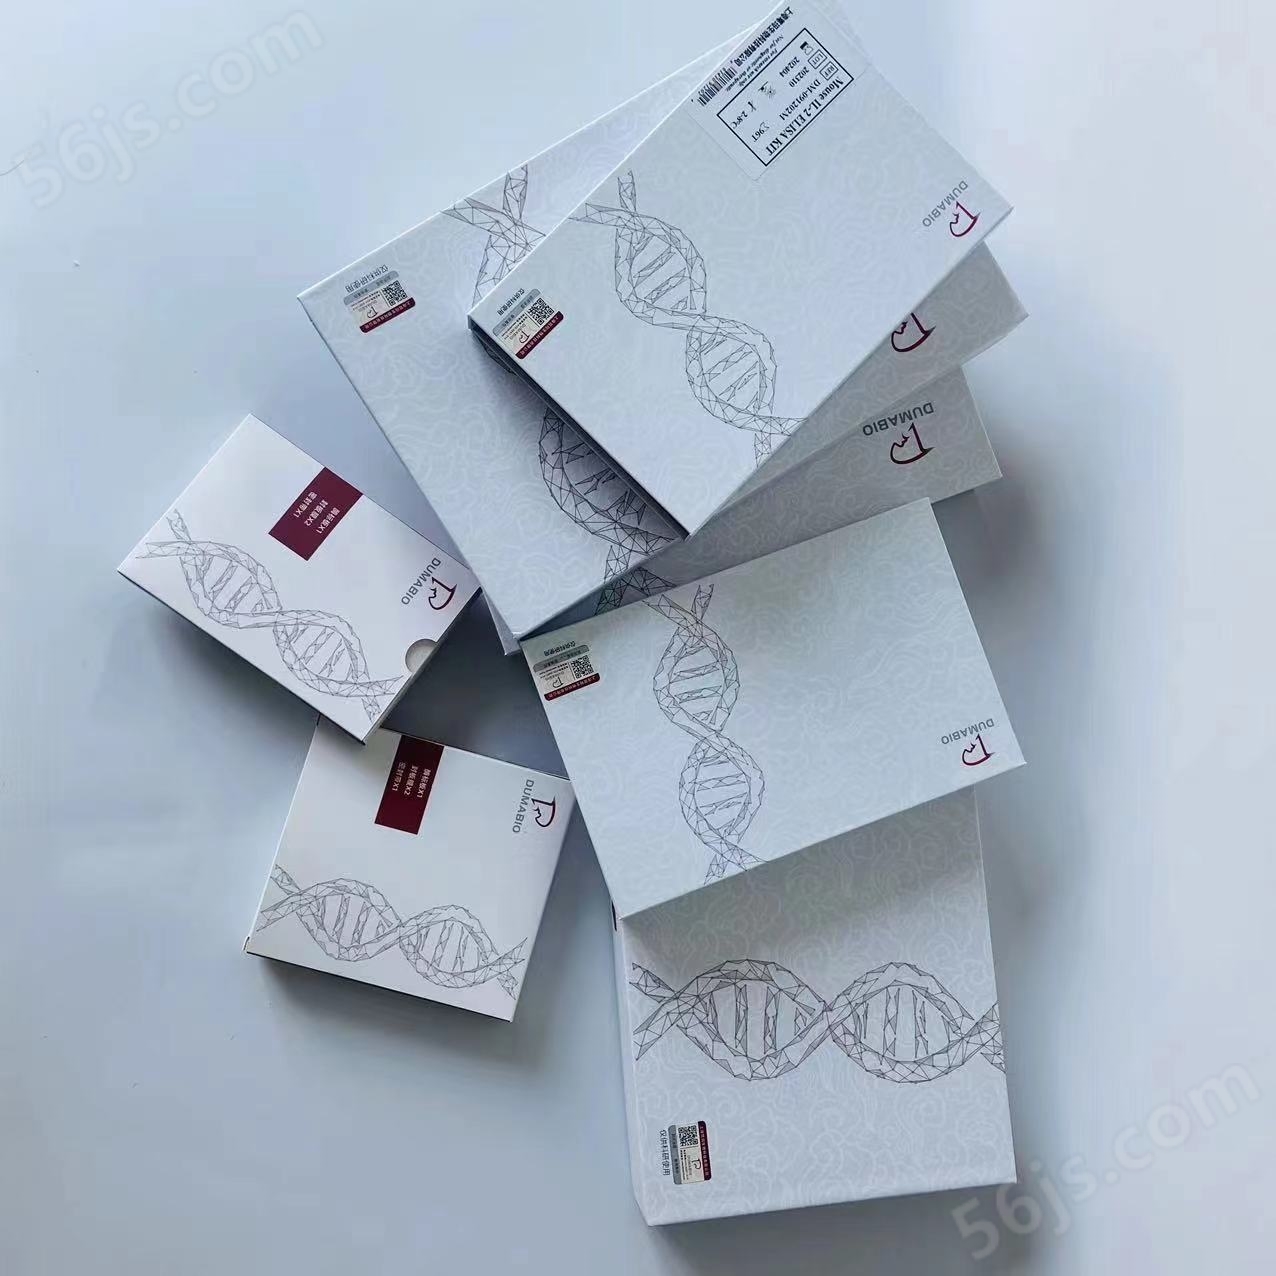 鼠白介素ELISA试剂盒